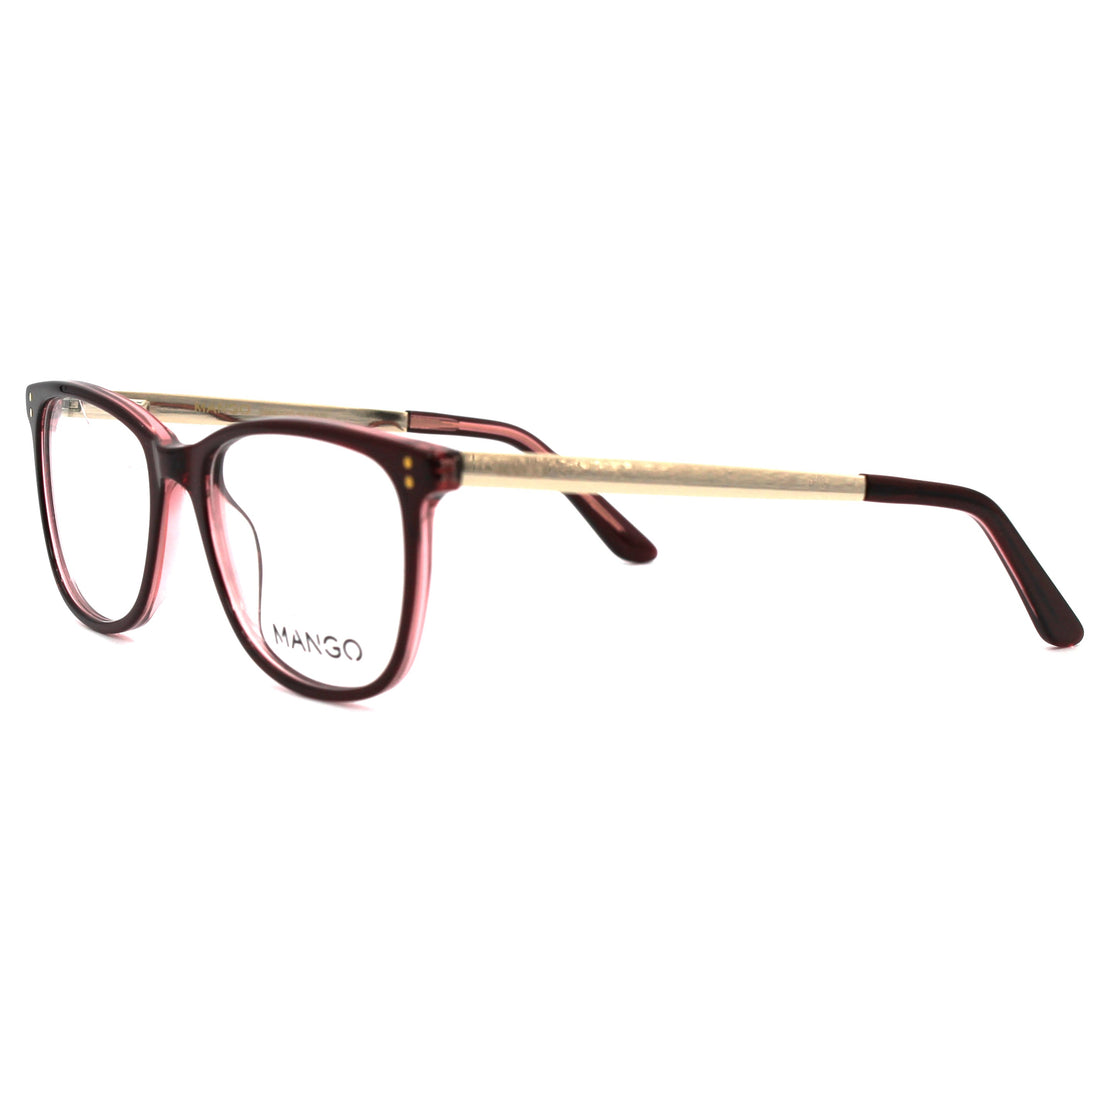 Monture de lunettes MANGO | Modèle MNG182480